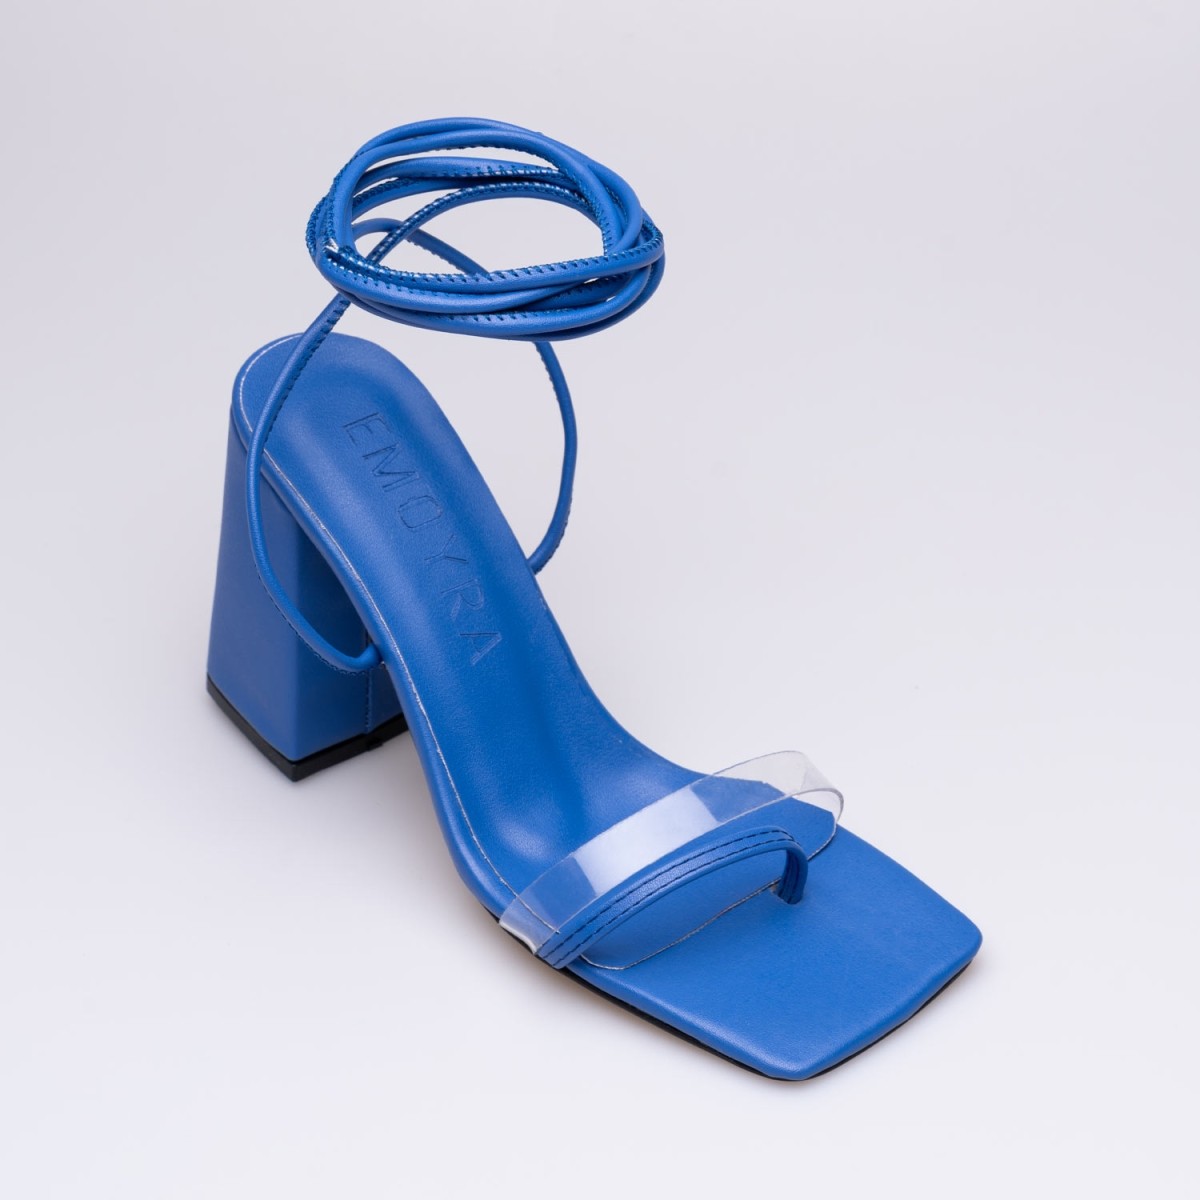 Becca Kalın Yüksek Topuklu Ayakkabı Mavi